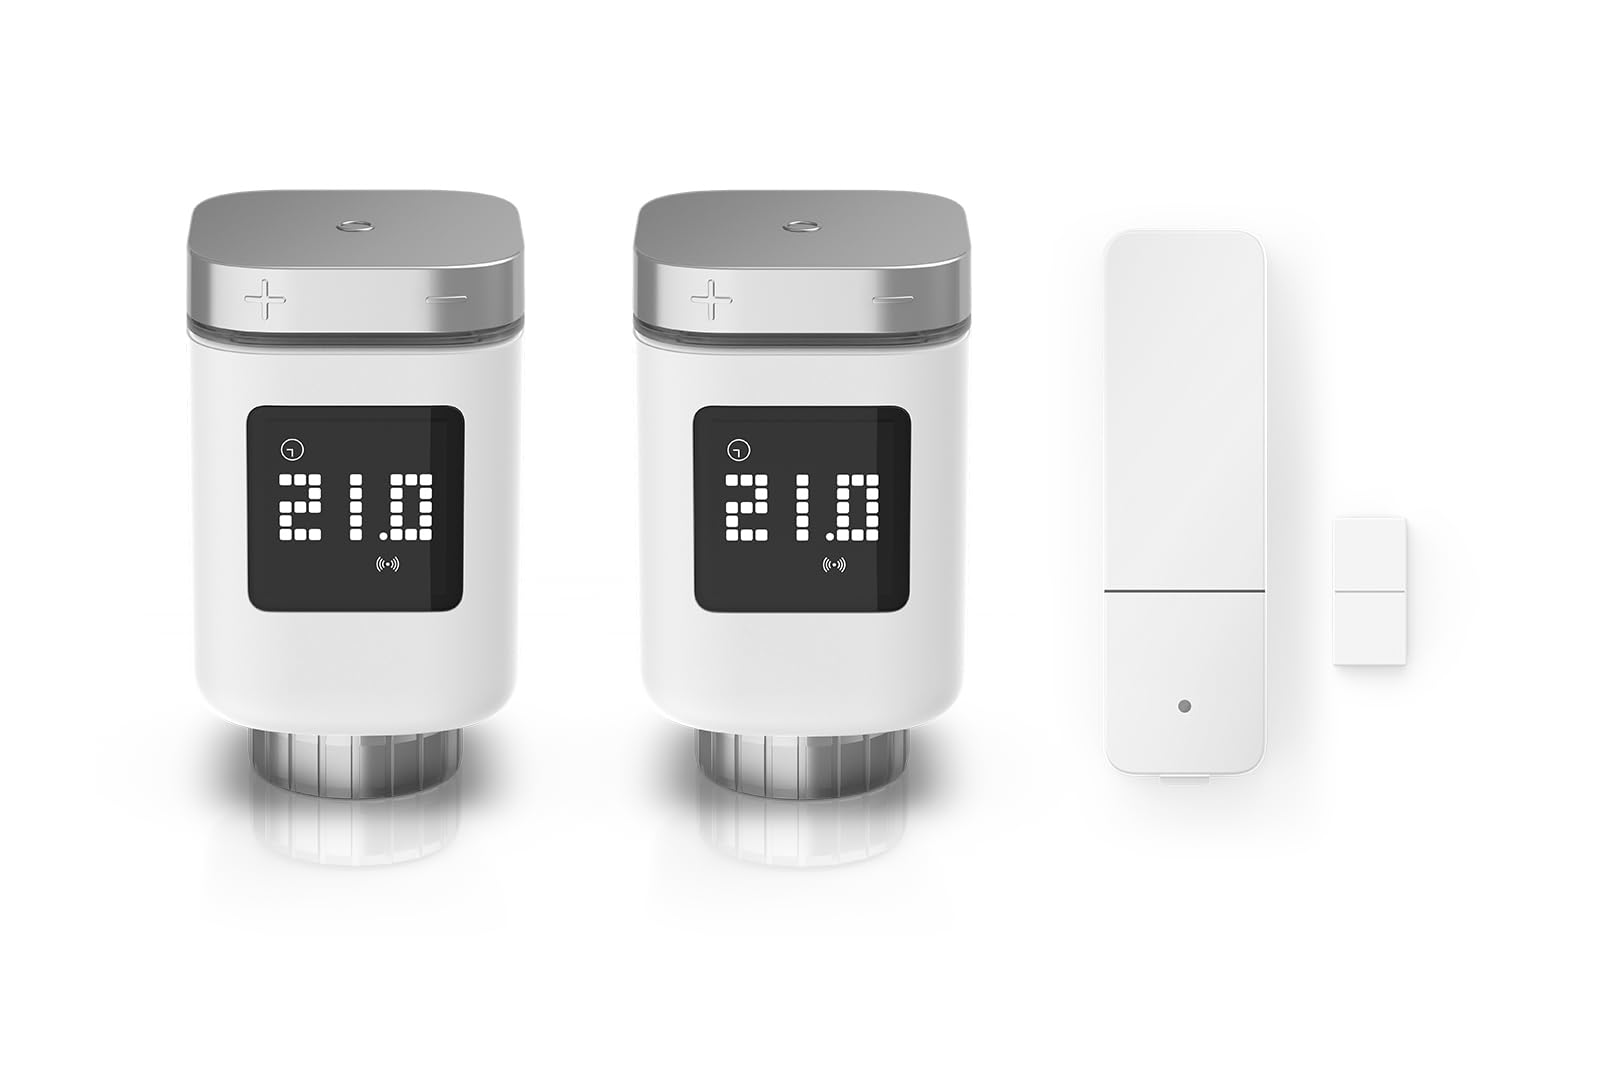 Bosch Smart Home Erweiterungsset Heizen 2x smarte Heizkörperthermostate 1x Tür-/Fensterkontakt II, smarter Sensor zum energieeffizienten Heizen, kompatibel mit Amazon Alexa, Apple HomeKit, Google Home